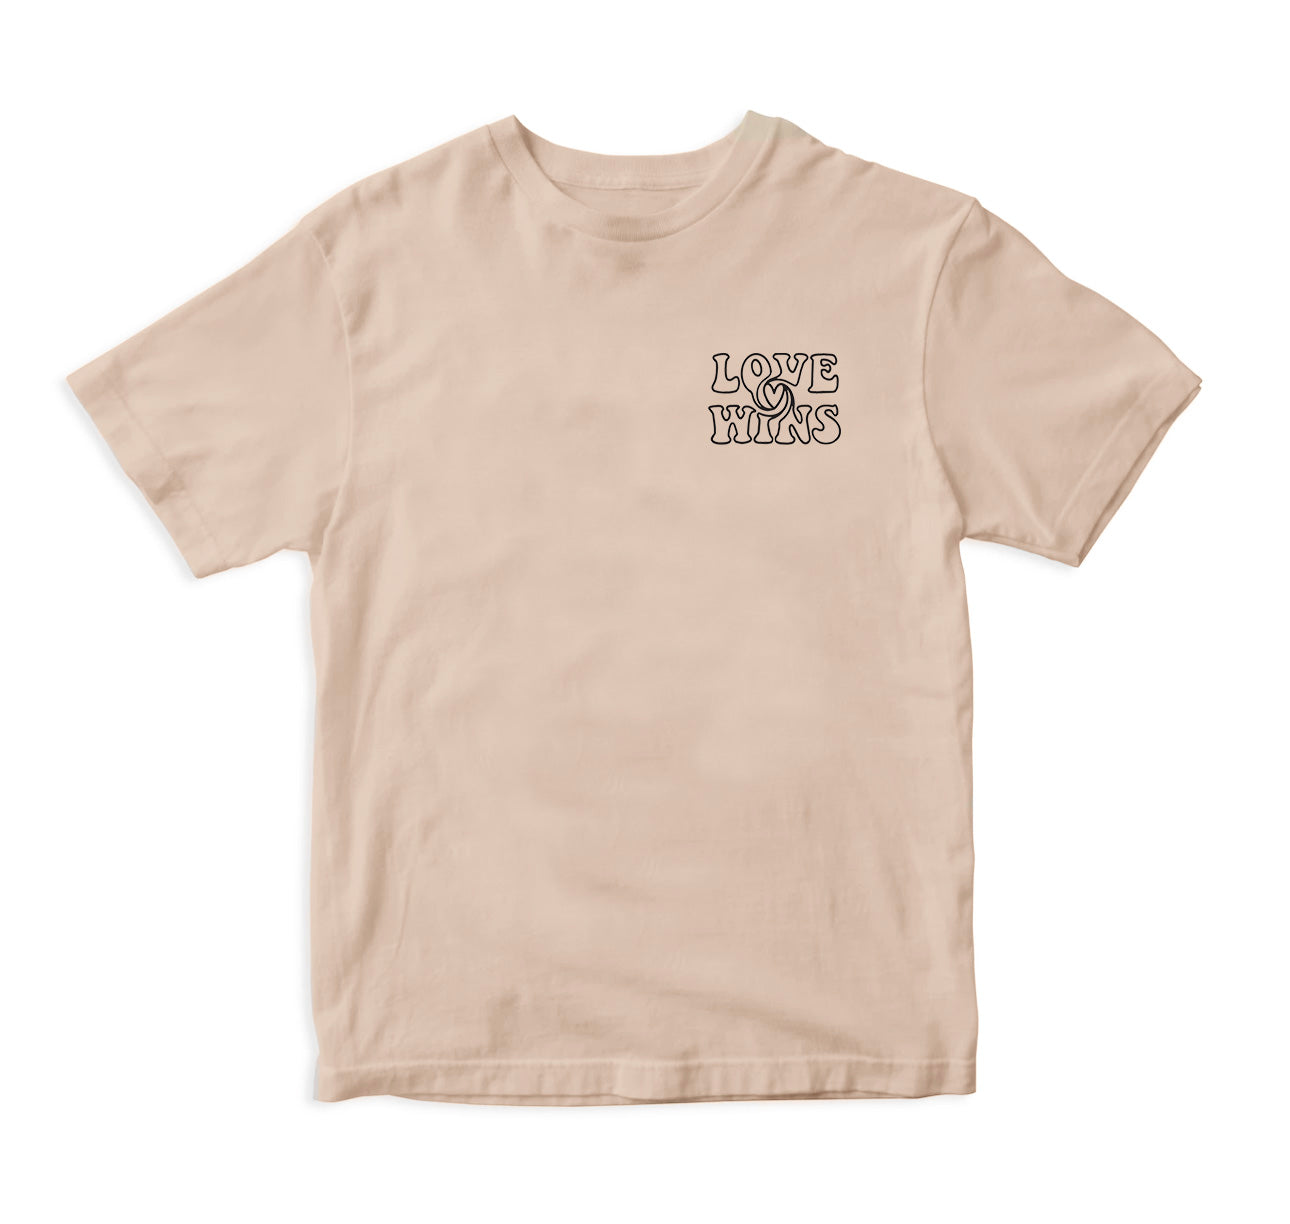 Love Wins - Beige T-Shirt